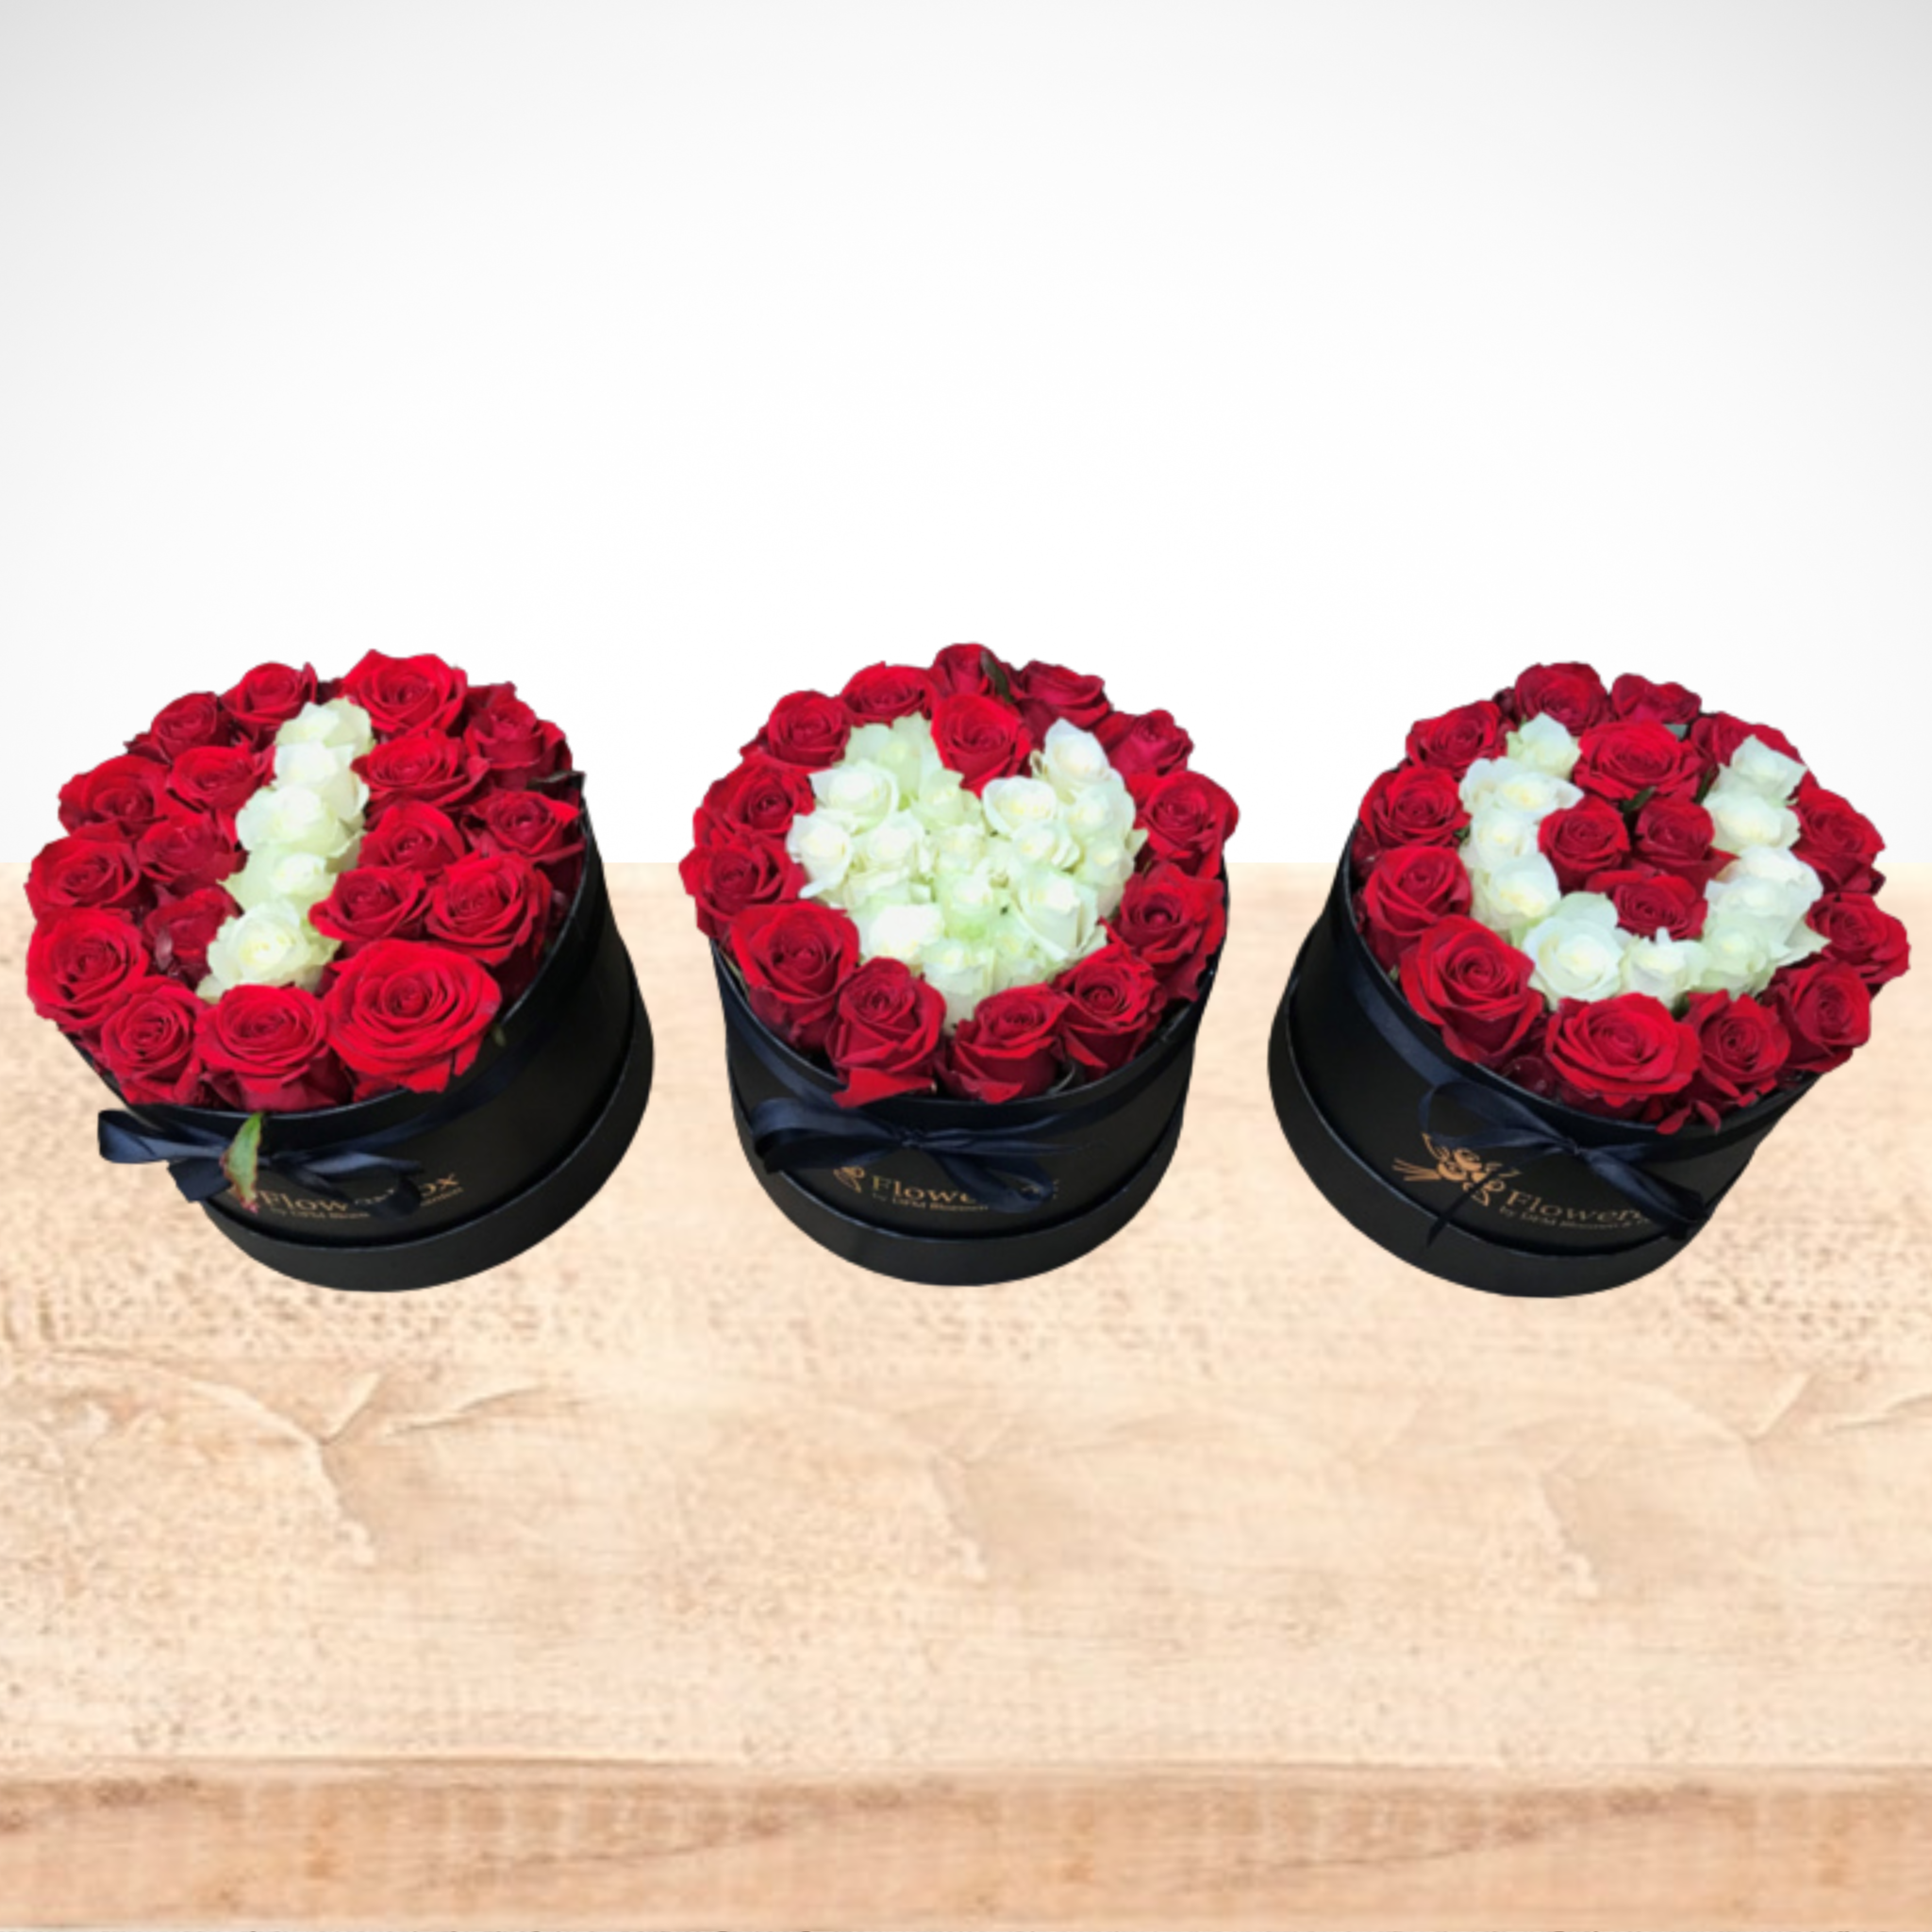 Visser Gelovige alcohol Flowerbox rozen I Love You - DFM Bloemen & Planten